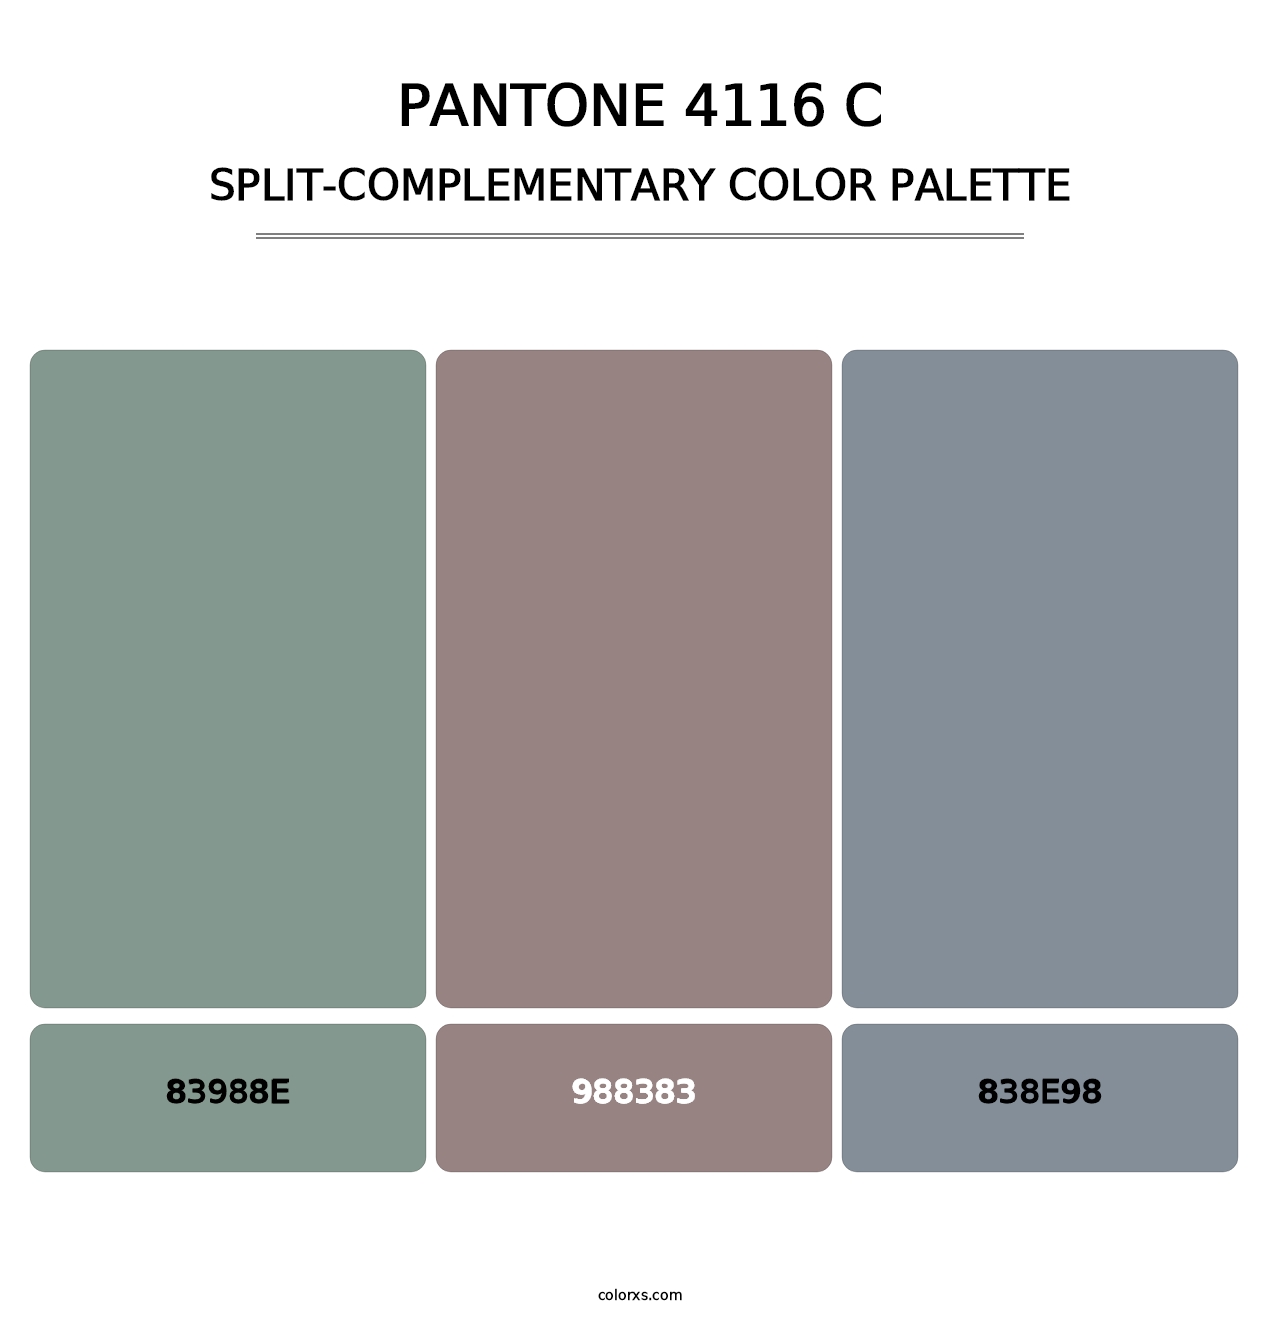 PANTONE 4116 C - Split-Complementary Color Palette